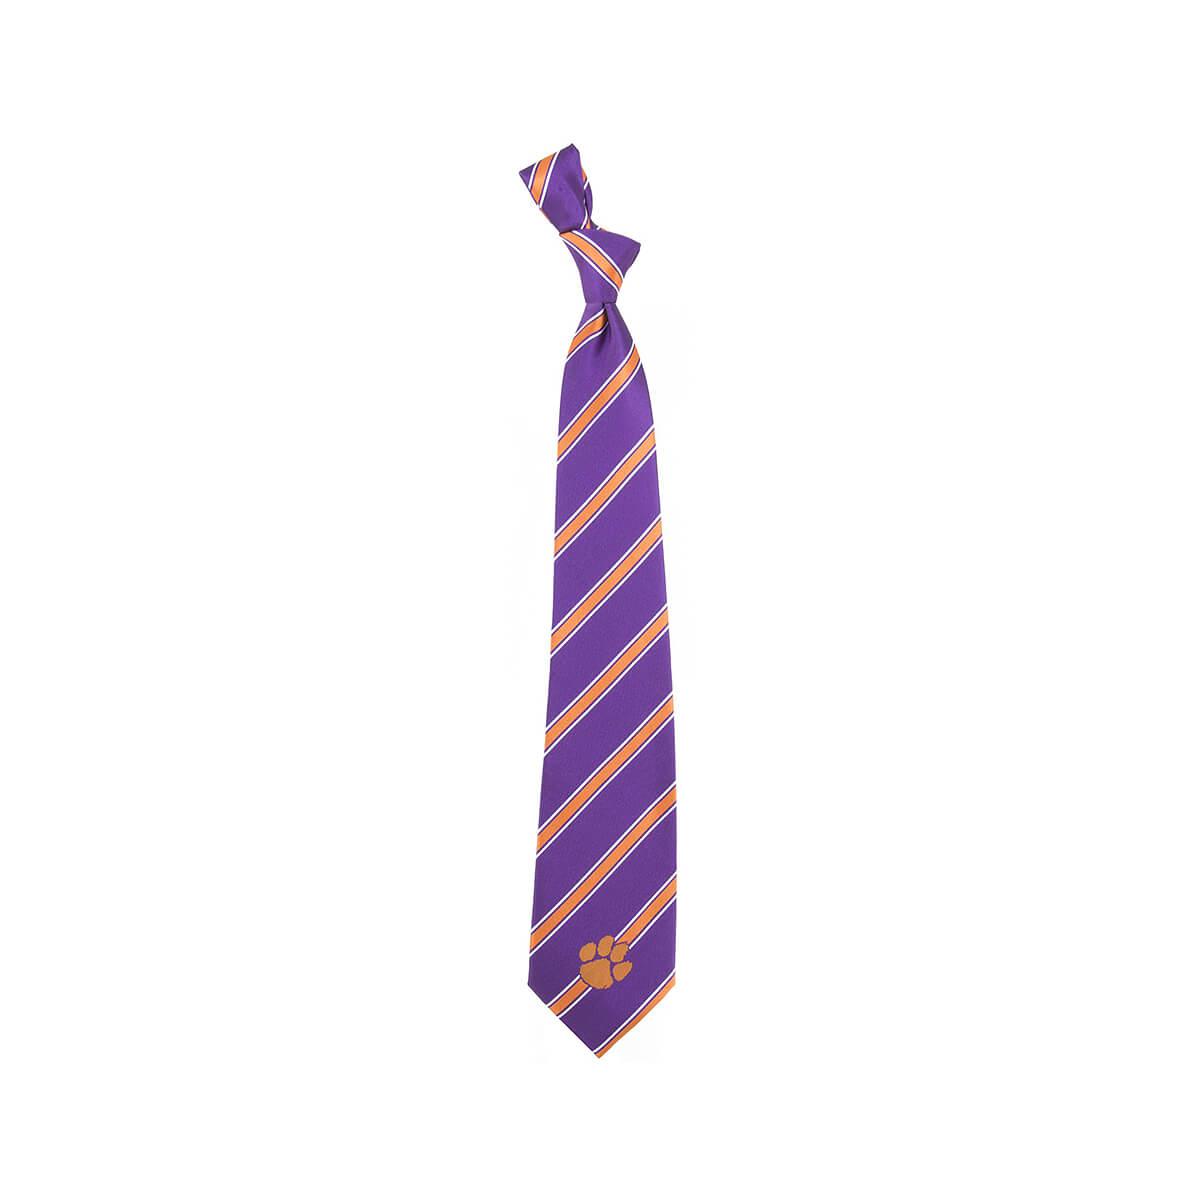  Clemson Tigers Tie